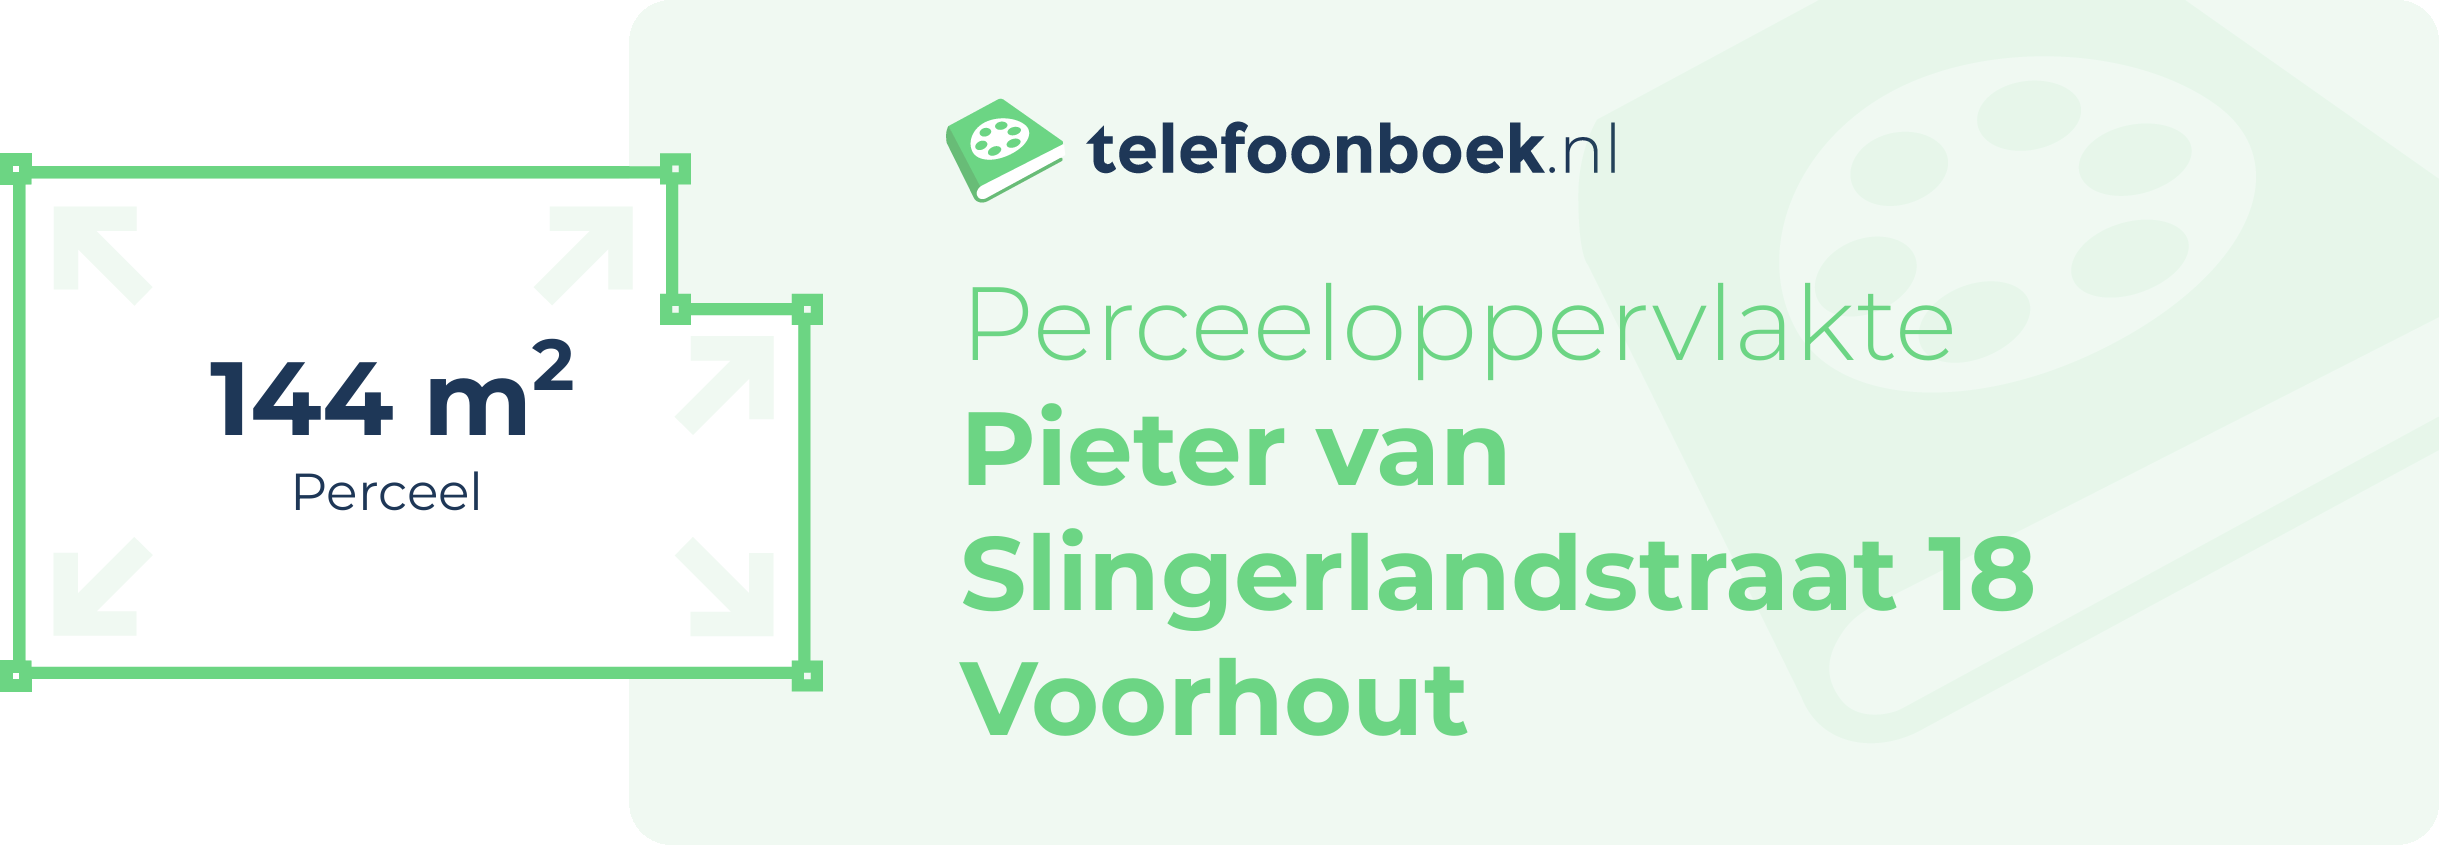 Perceeloppervlakte Pieter Van Slingerlandstraat 18 Voorhout